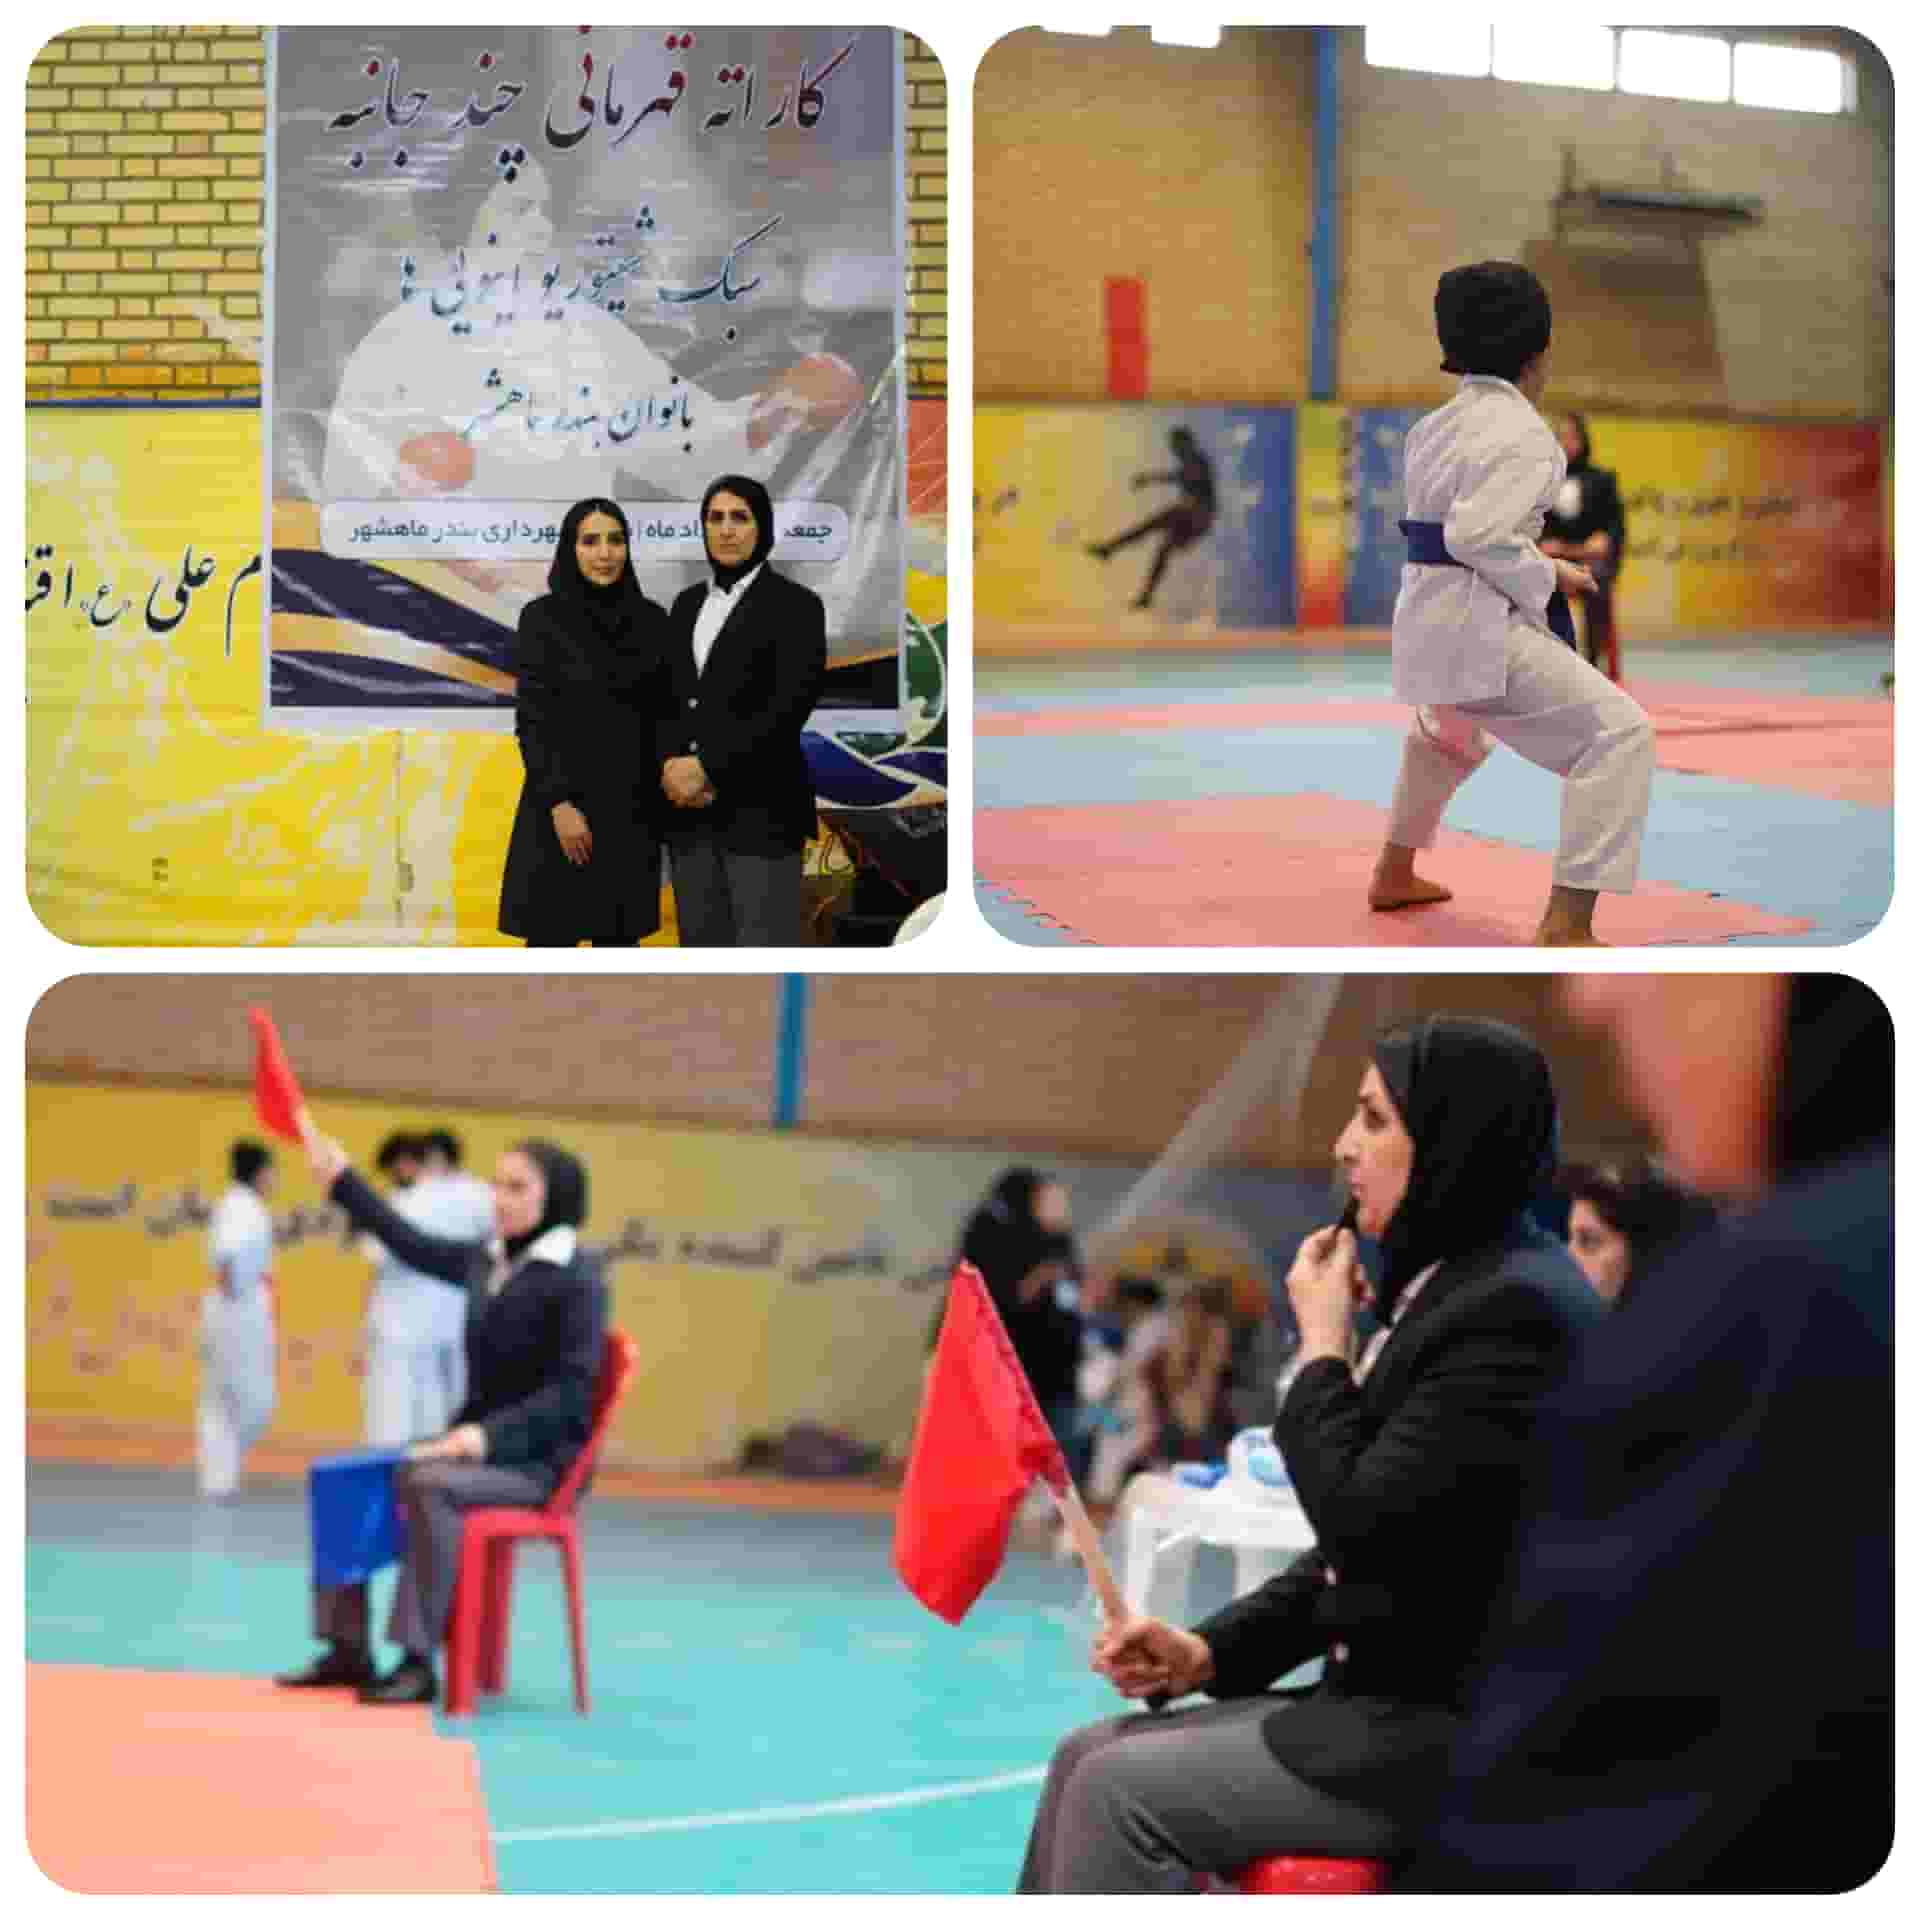  کسب مقام اول مسابقات کاراته چند جانبه قهرمانی توسط بانوان ماهشهری